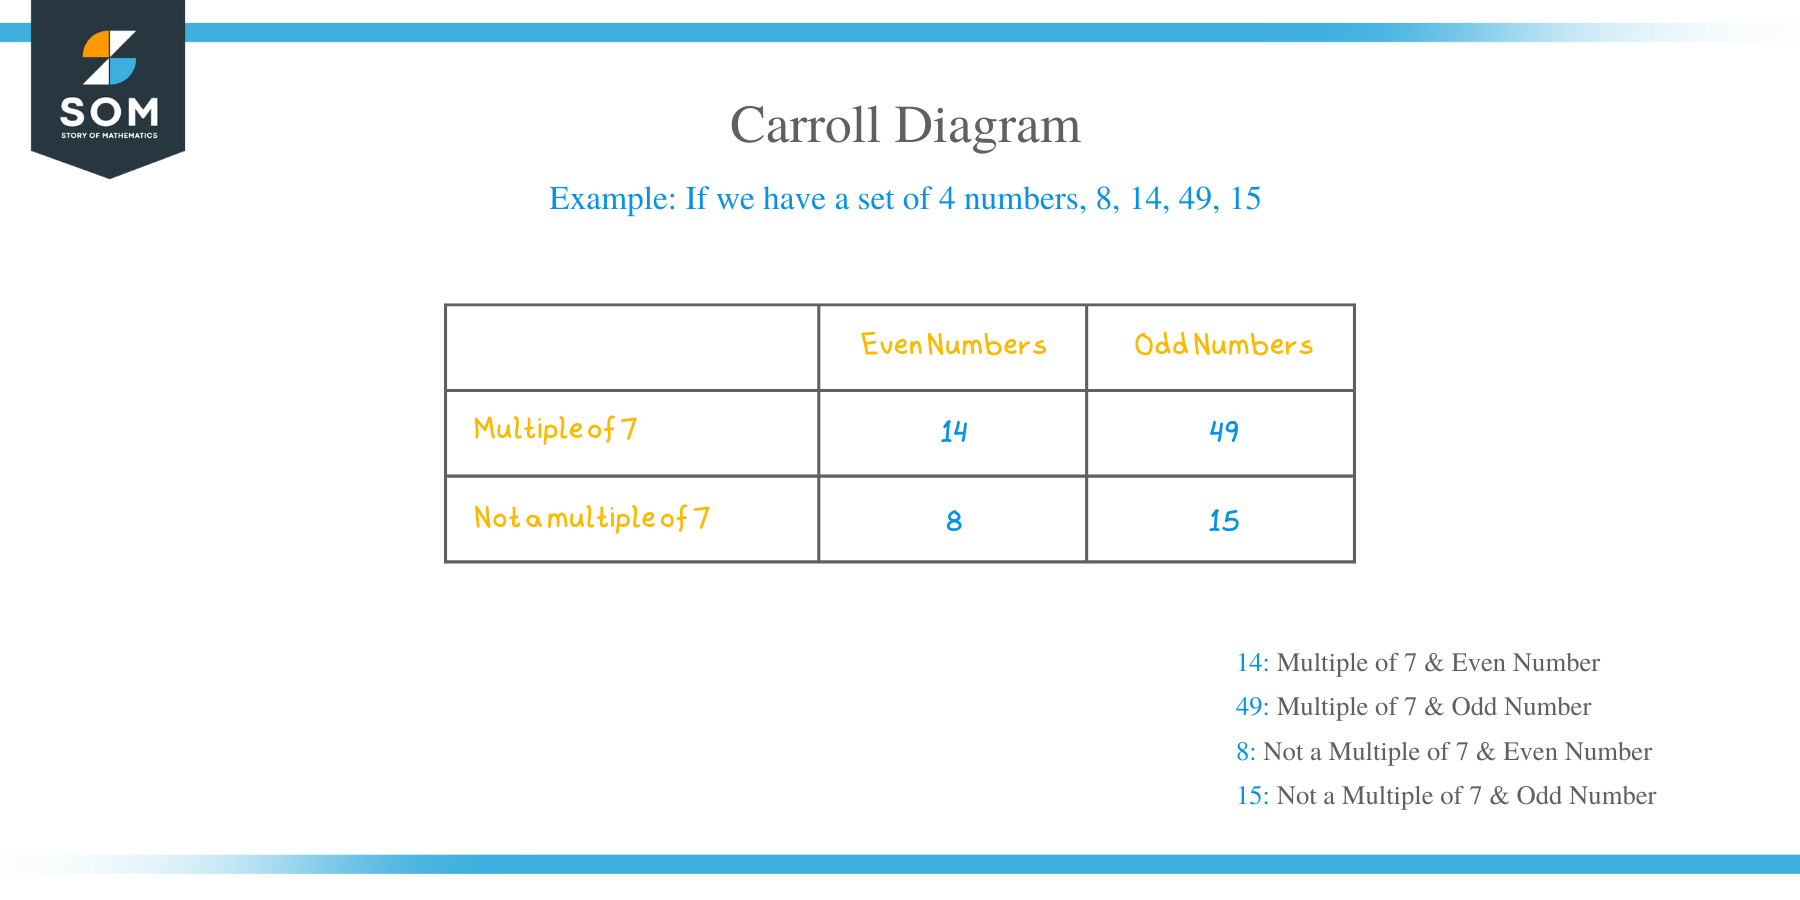 Carroll diagram components